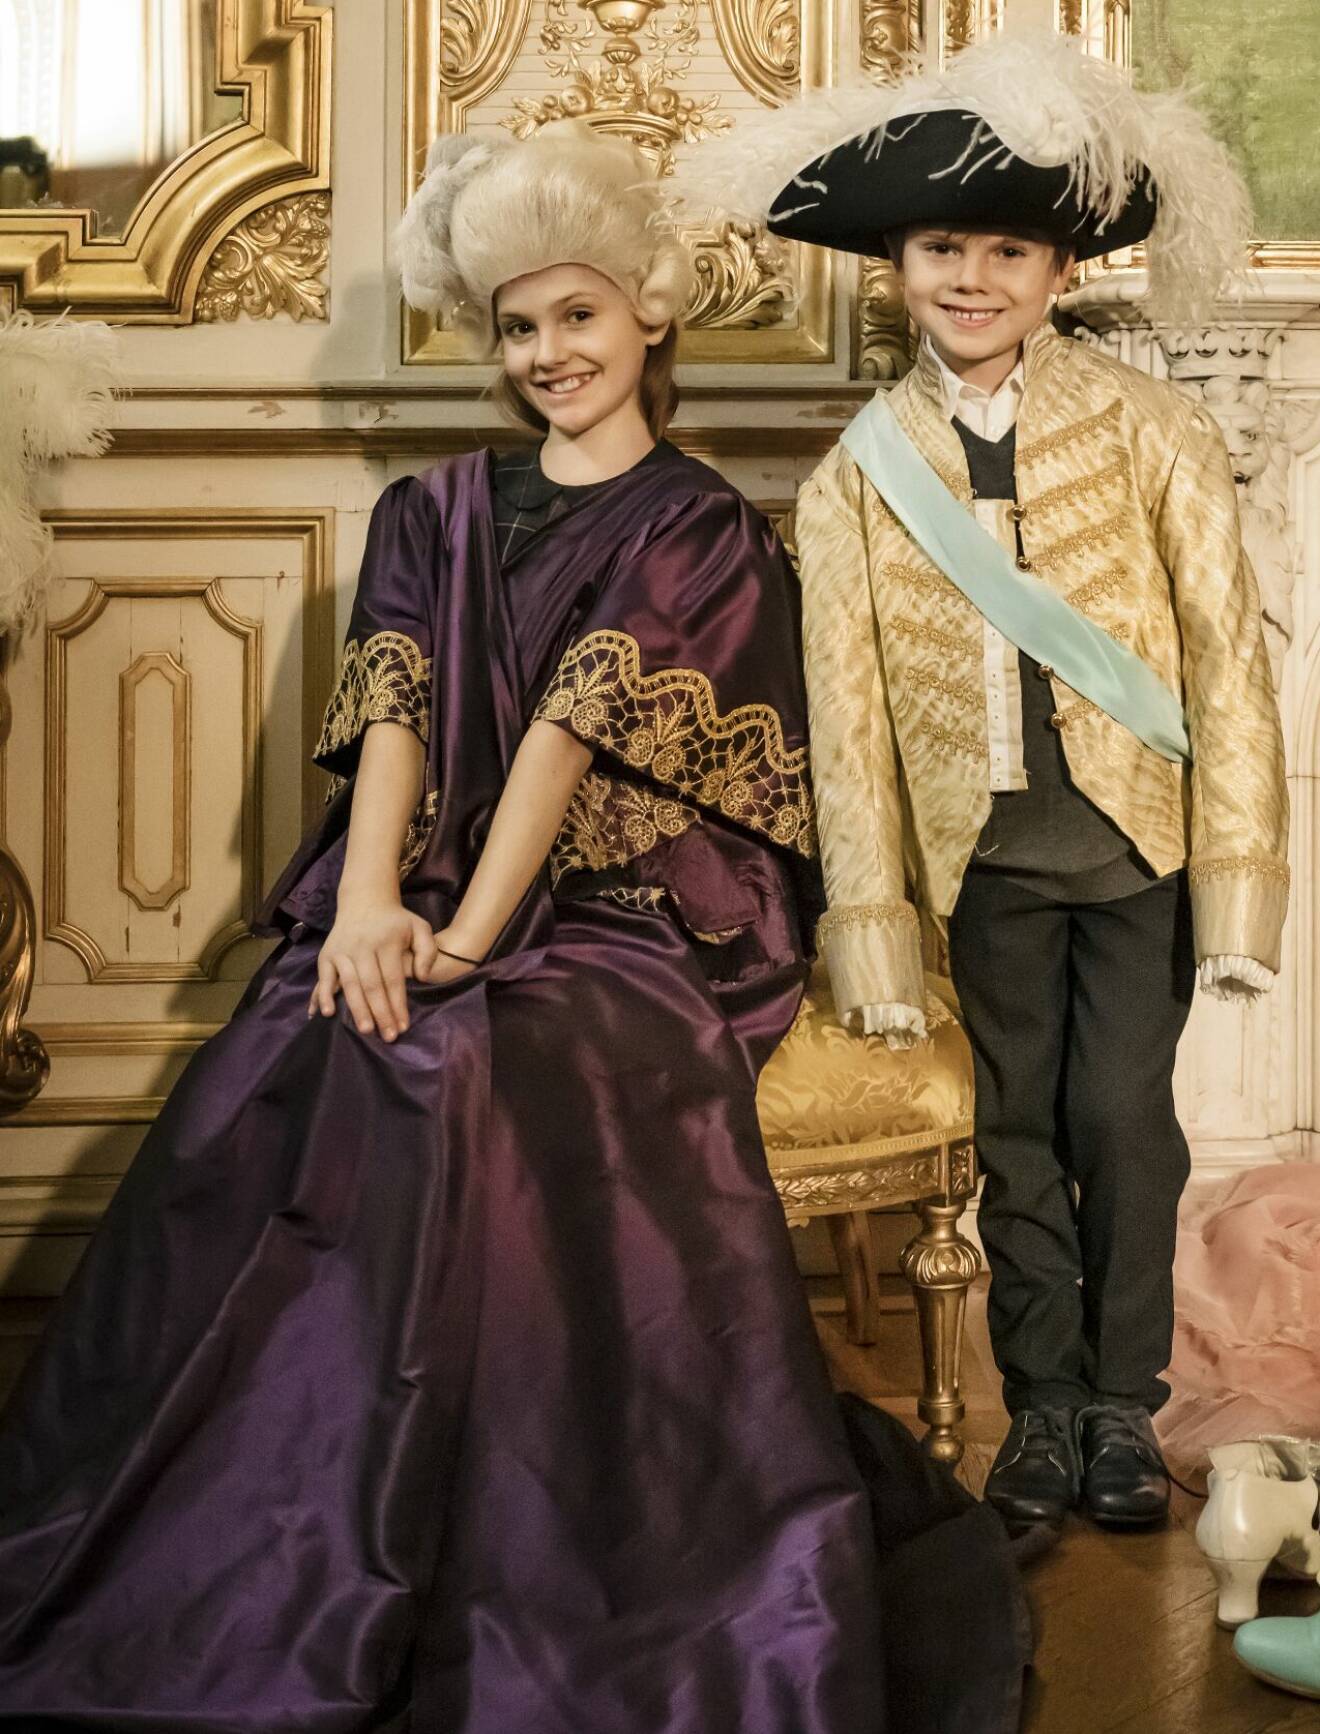 Prinsessan Estelle provar teaterkostym tillsammans med prins Oscar på Kungliga Operan i Stockholm